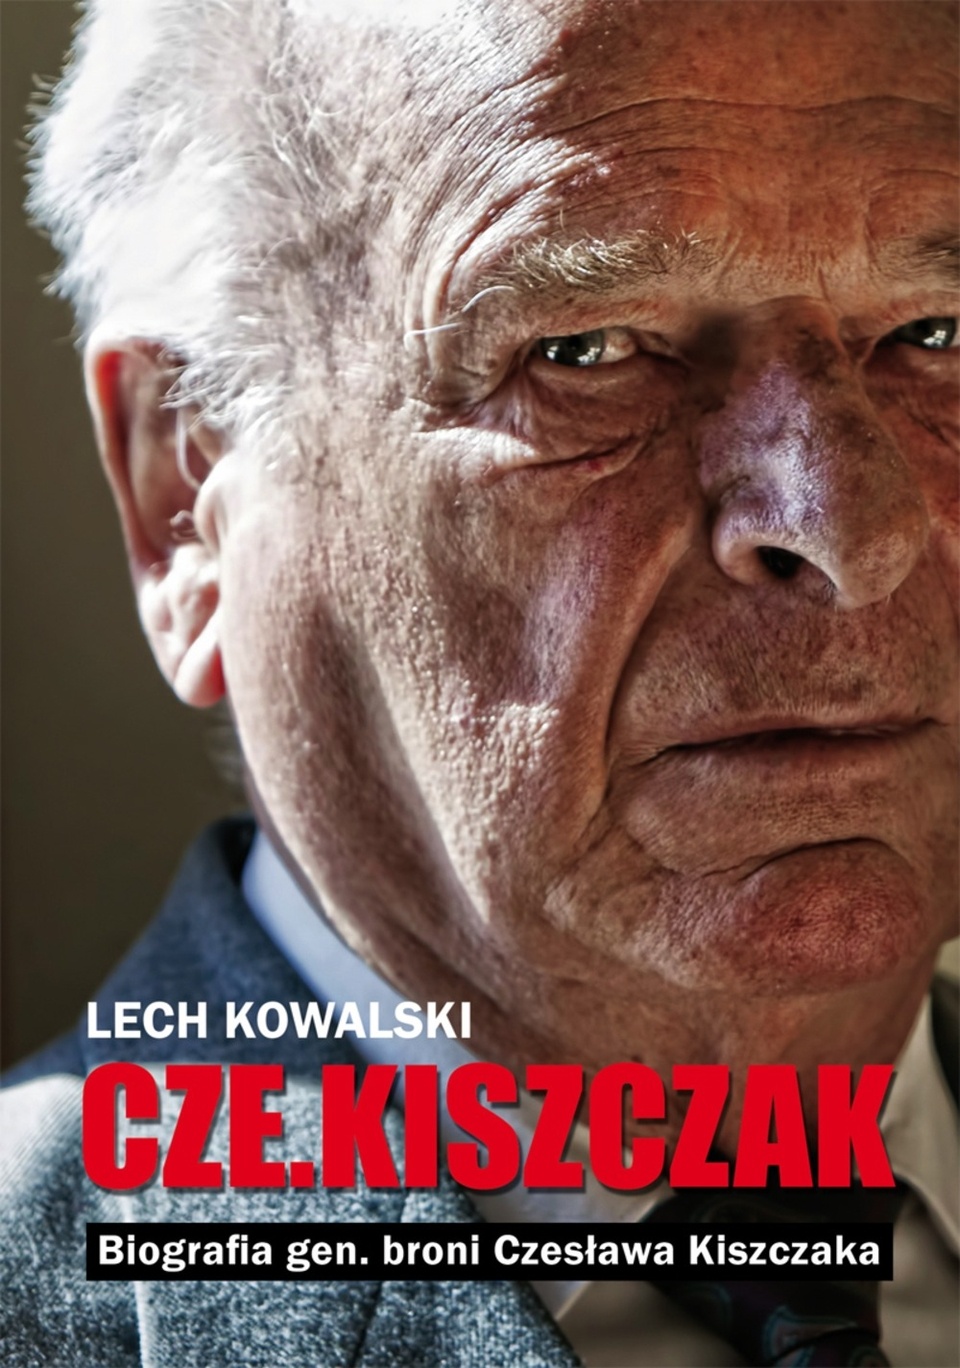 Biografia Czesława Kiszczaka "CzeKiszczak". Materiały promocyjne